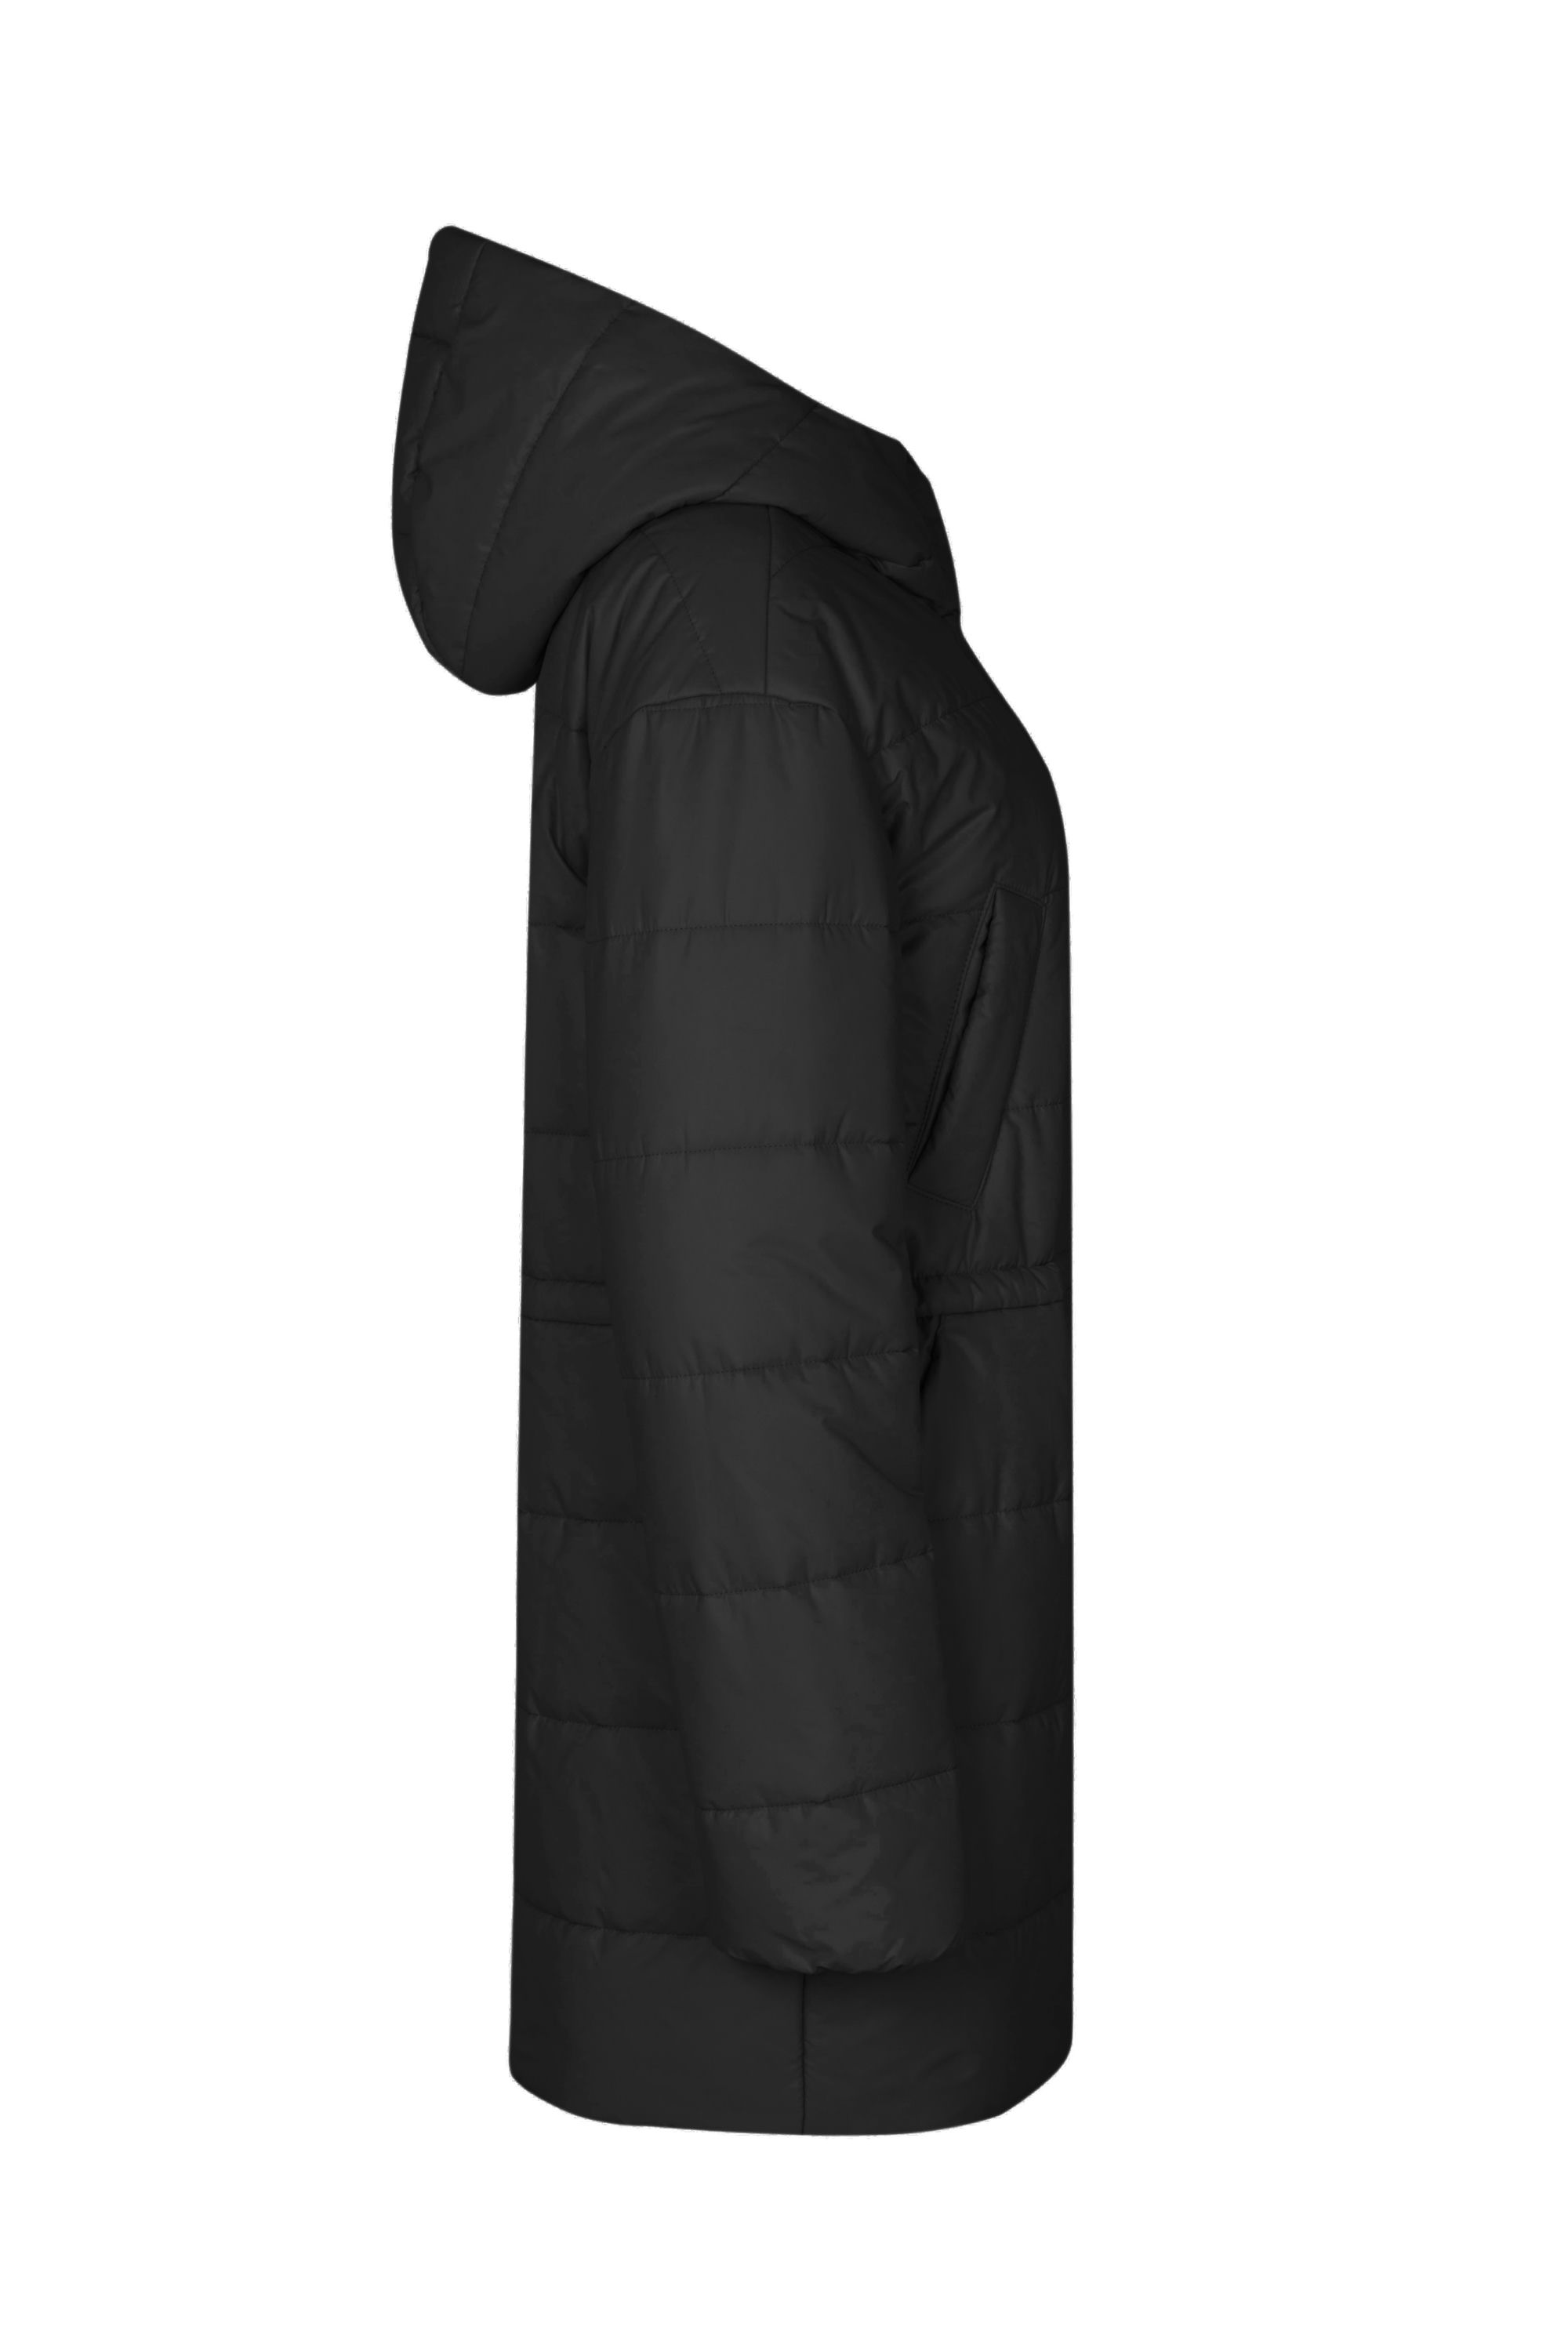 Пальто женское плащевое утепленное 5-13121-1